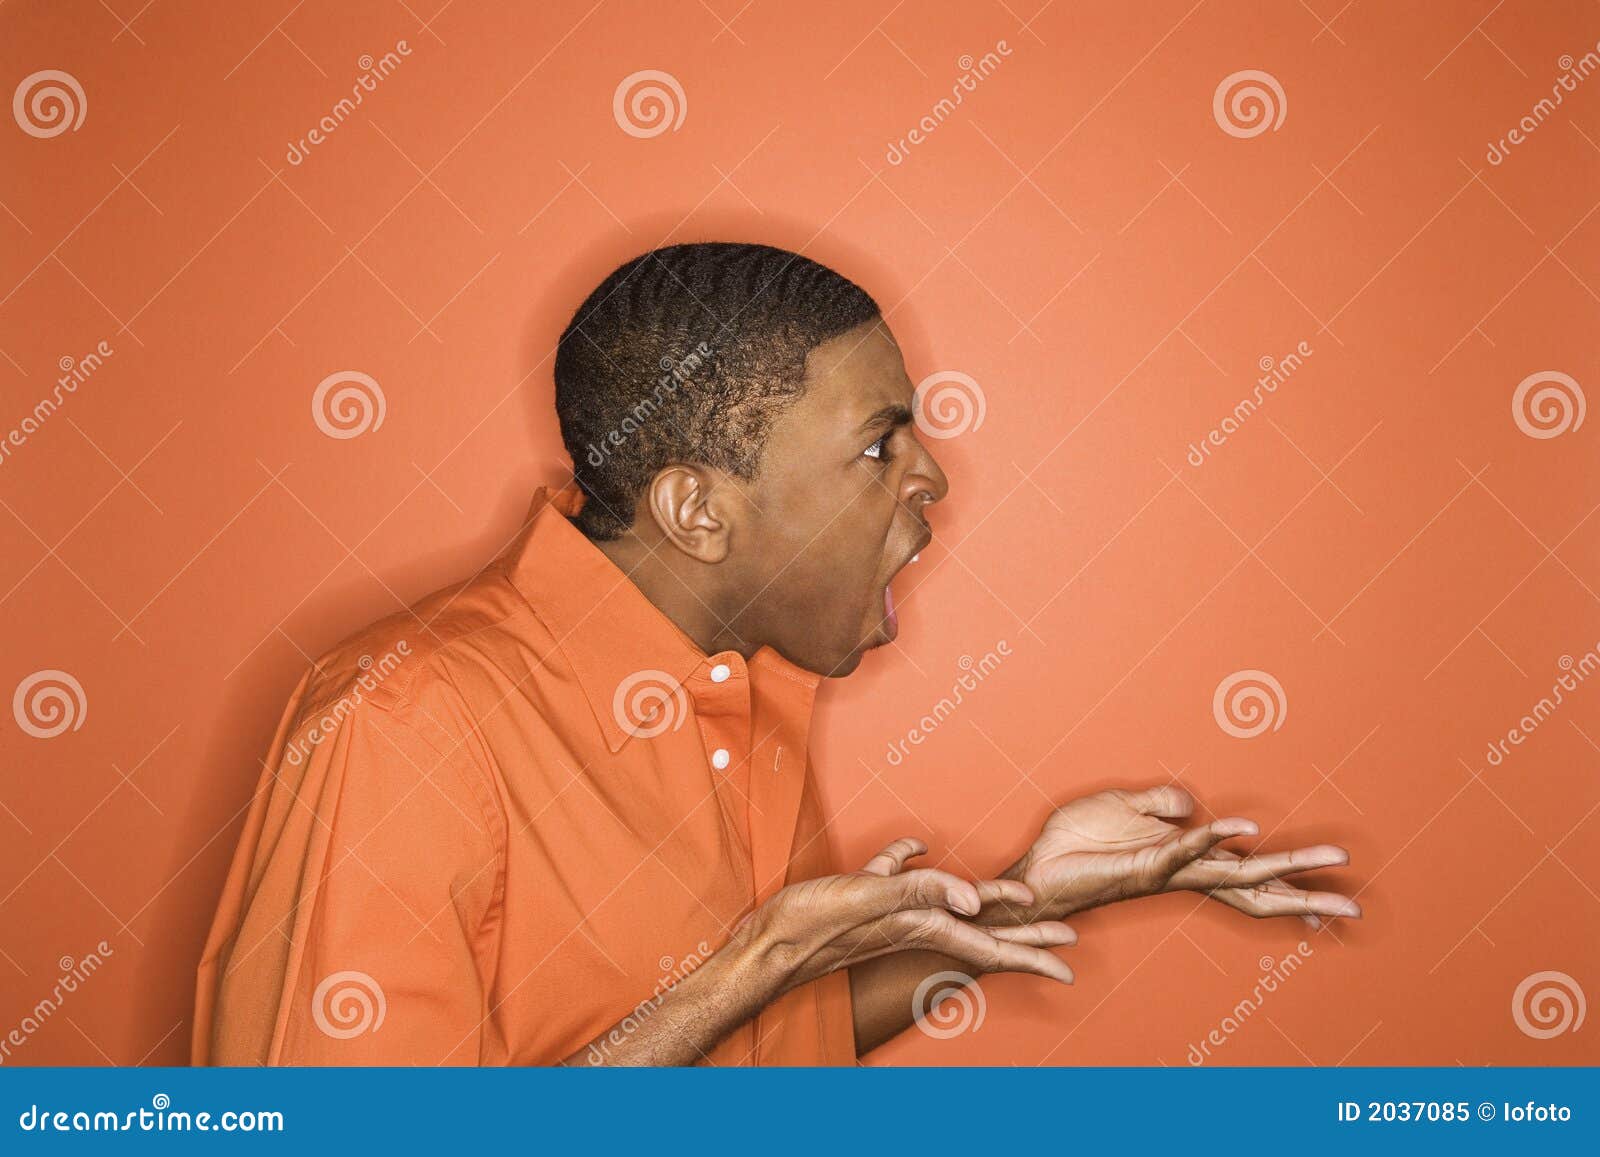 Afrikaans-Amerikaanse mens die woede uitdrukt. Zijaanzicht van de jonge Afrikaans-Amerikaanse mens die op oranje achtergrond woede naar unseen persoon uitdrukt.